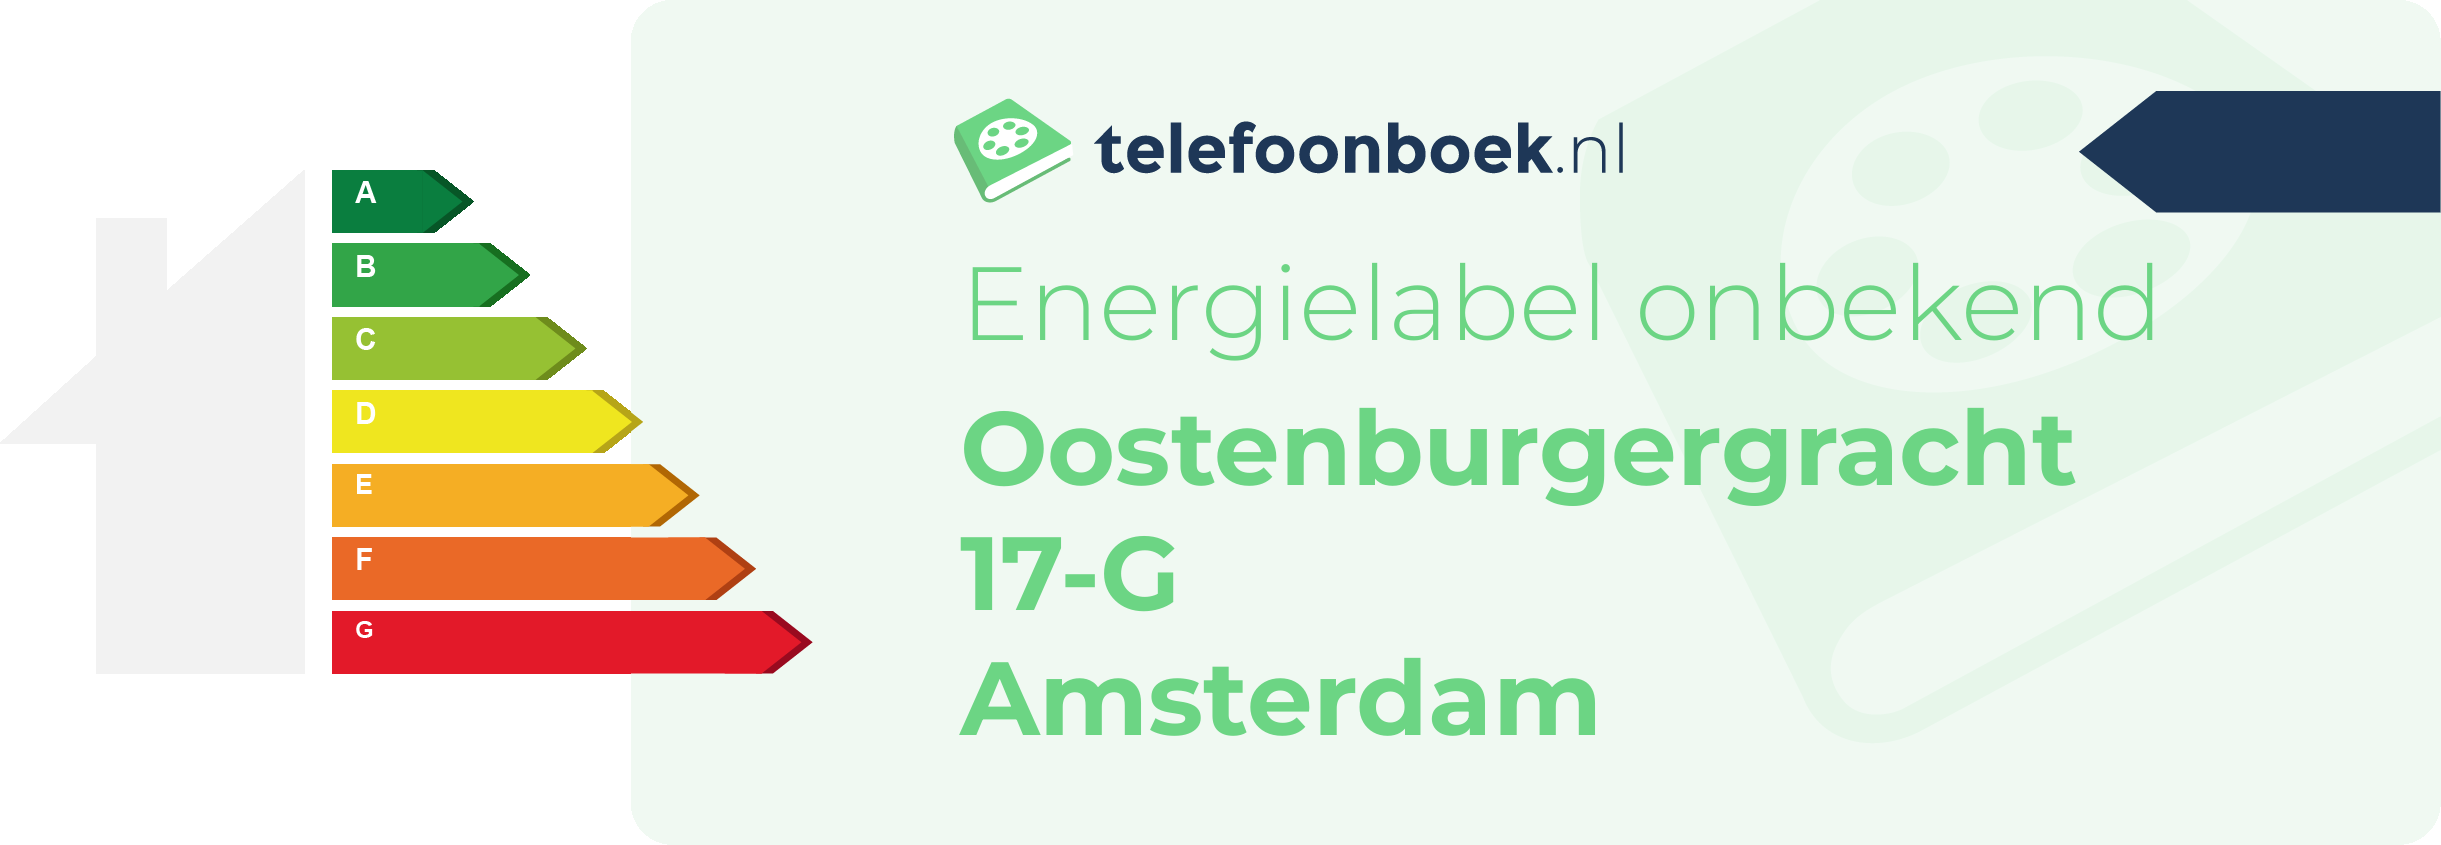 Energielabel Oostenburgergracht 17-G Amsterdam